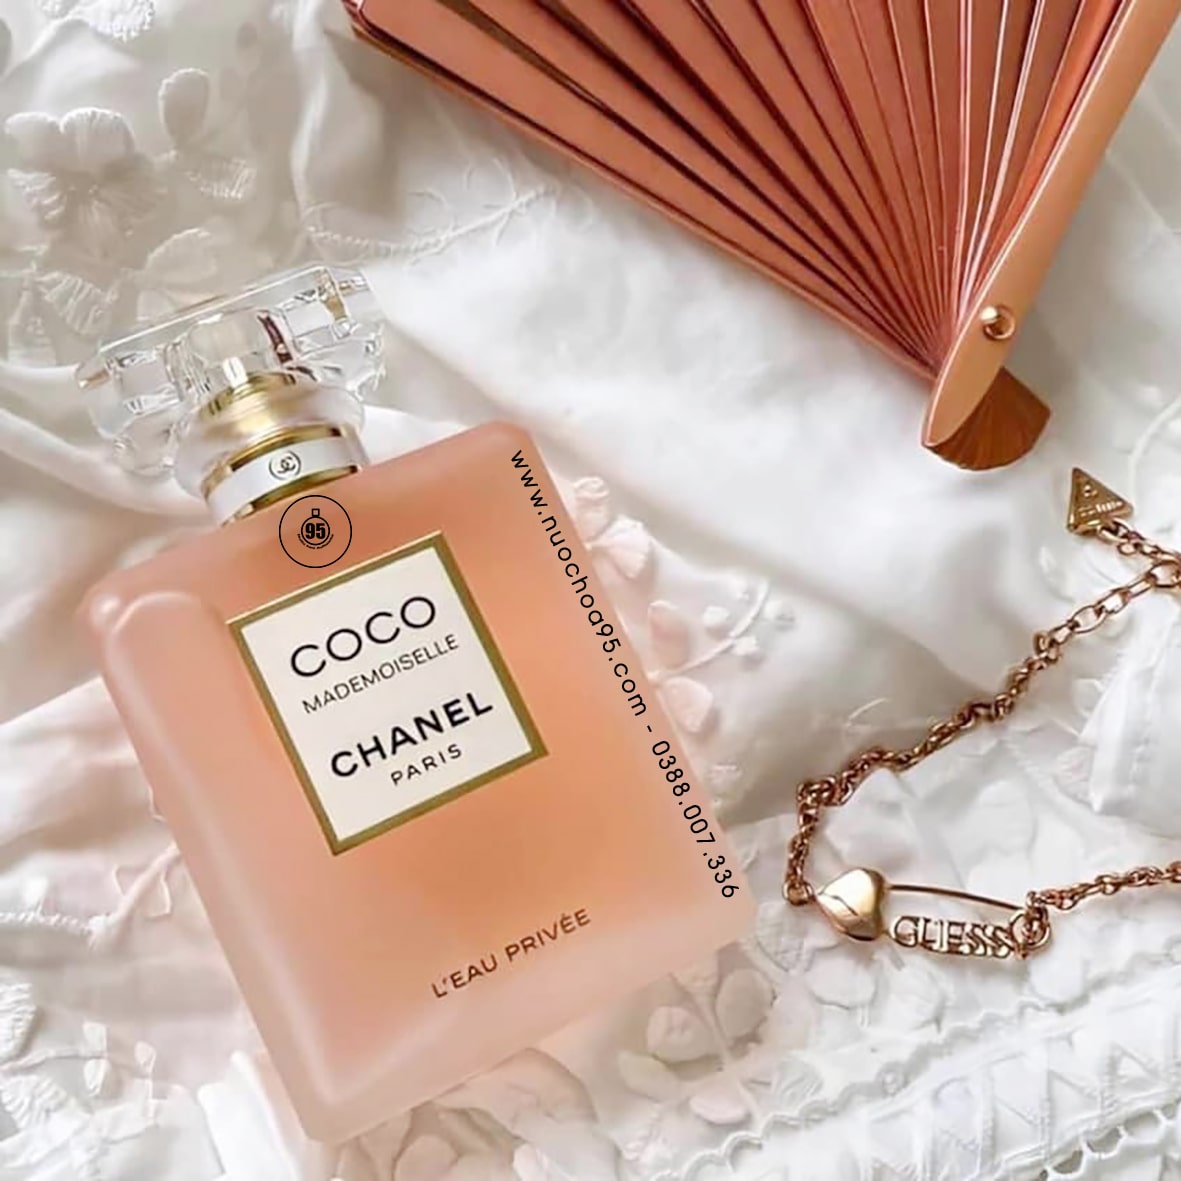 Nước hoa Chanel Coco Mademoiselle L’eau Privee  - Ảnh 3